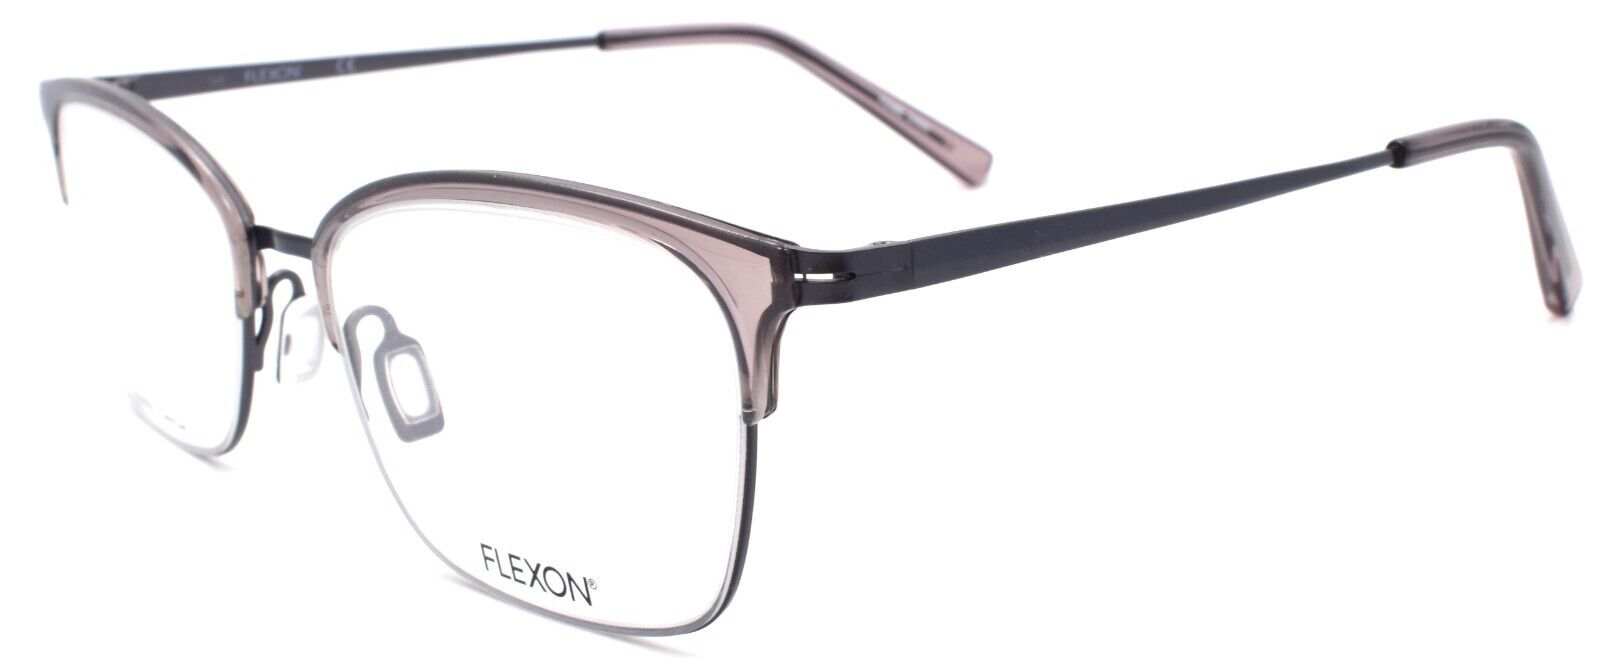 1-Flexon W3024 003 Women's Eyeglasses Frames Gray 53-19-140 Flexible Titanium-883900205658-IKSpecs